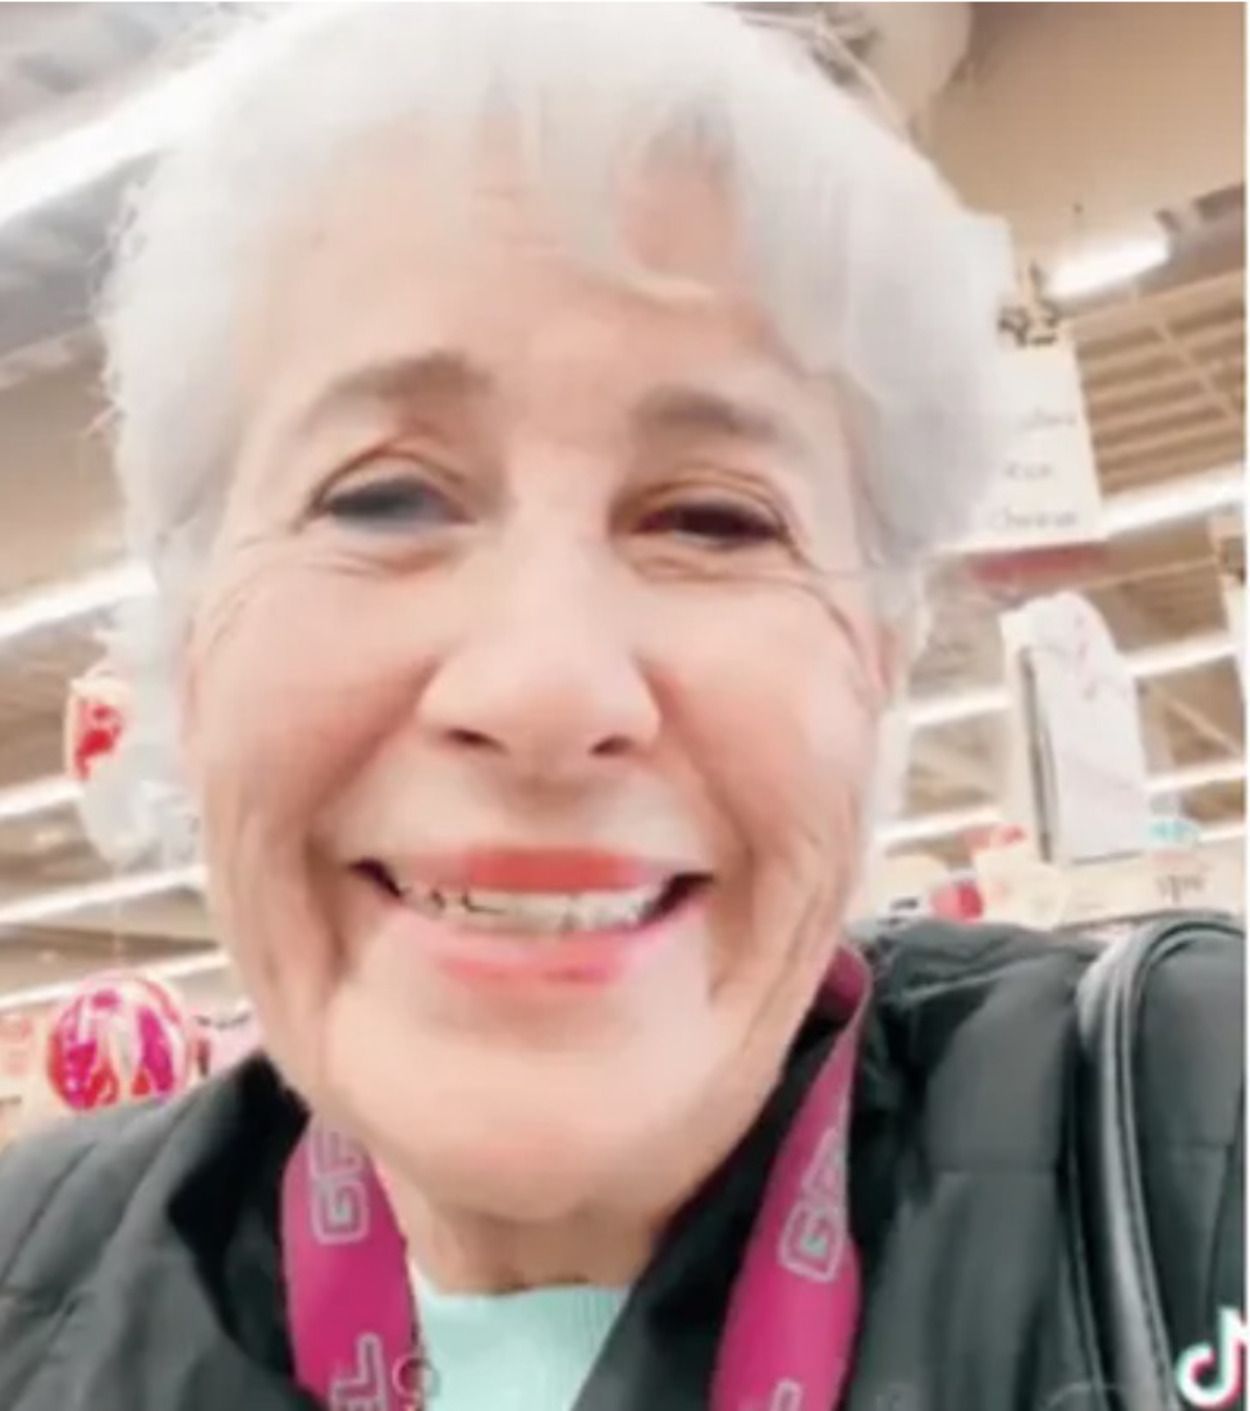 El mensaje viral de una mujer de 75 años recién divorciada: "Hay que vivir y dejar vivir"